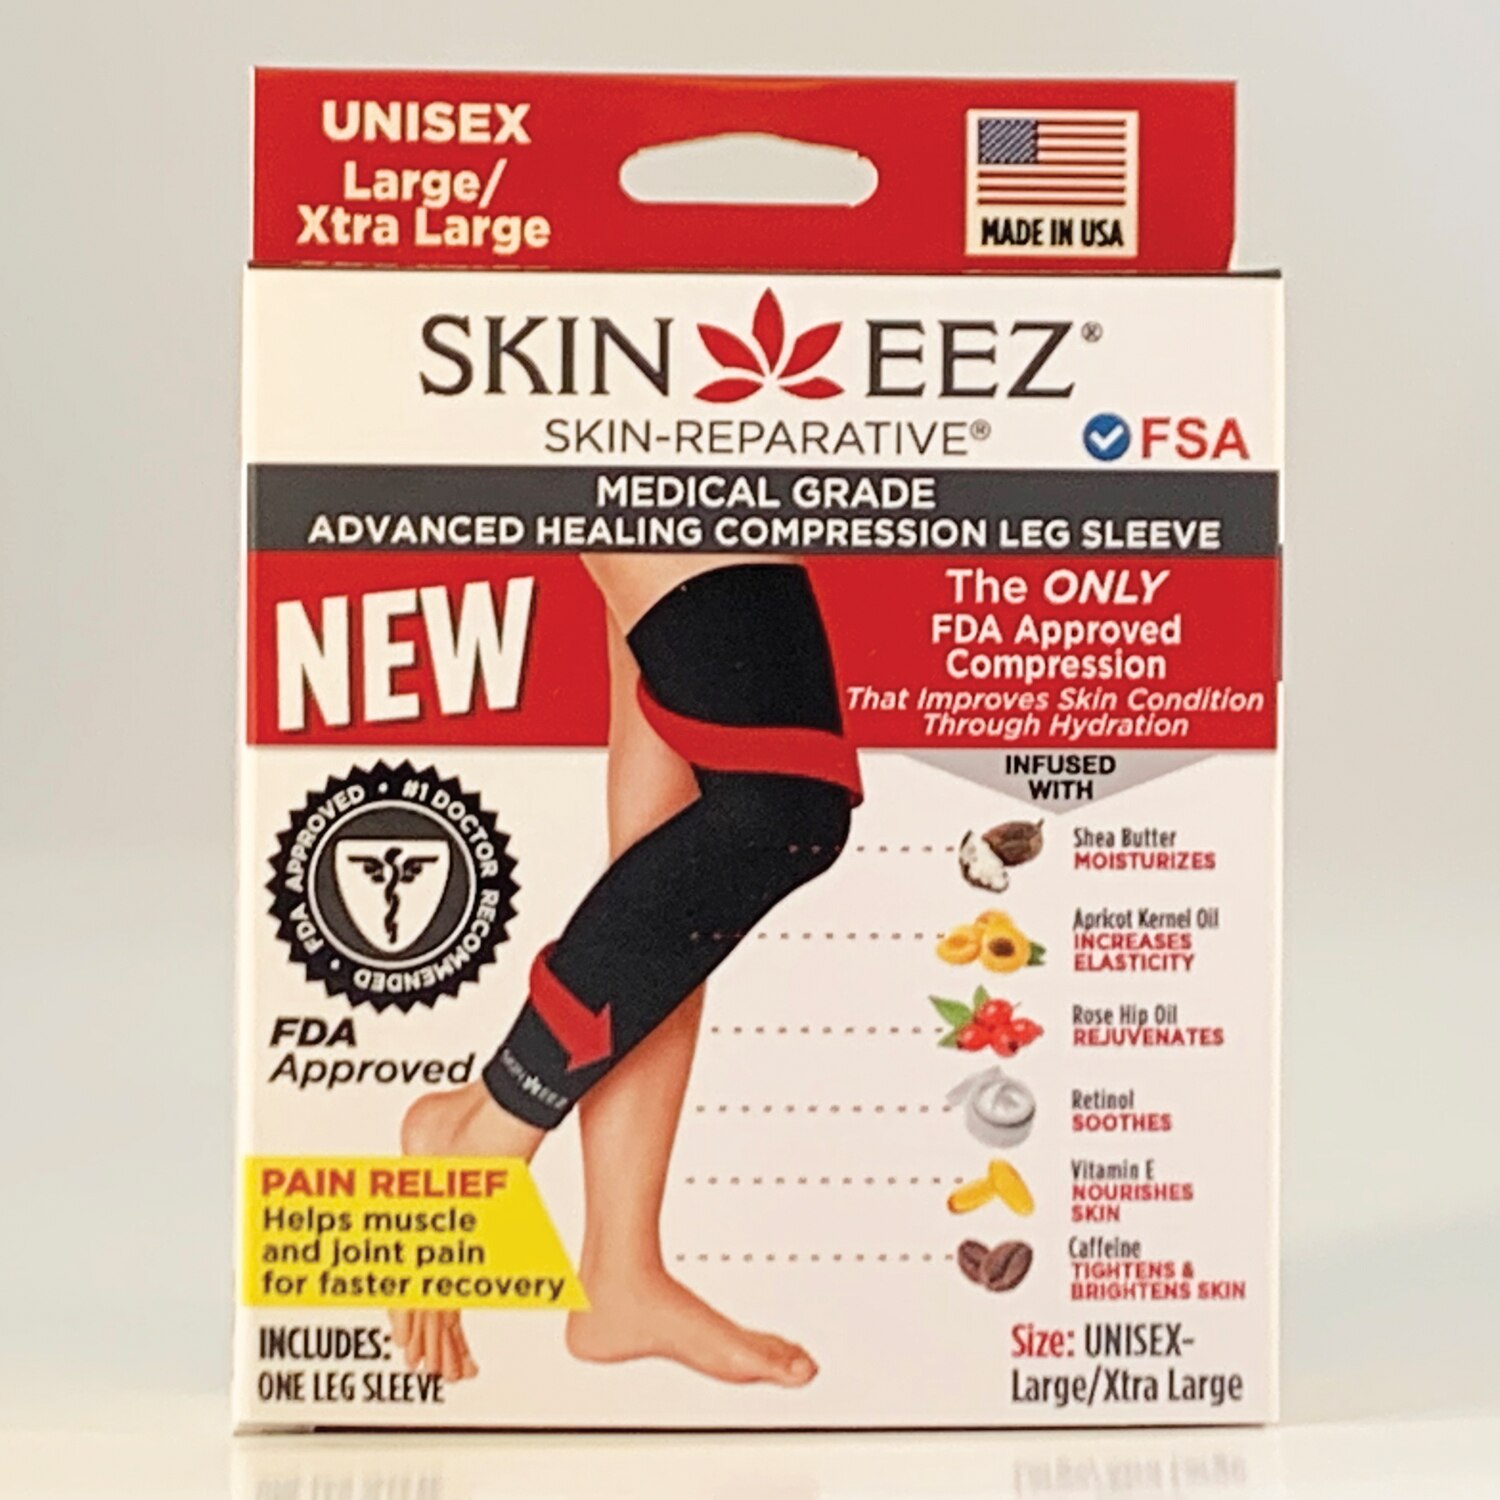 Skineez Medical Grade Compression Leg Sleeve